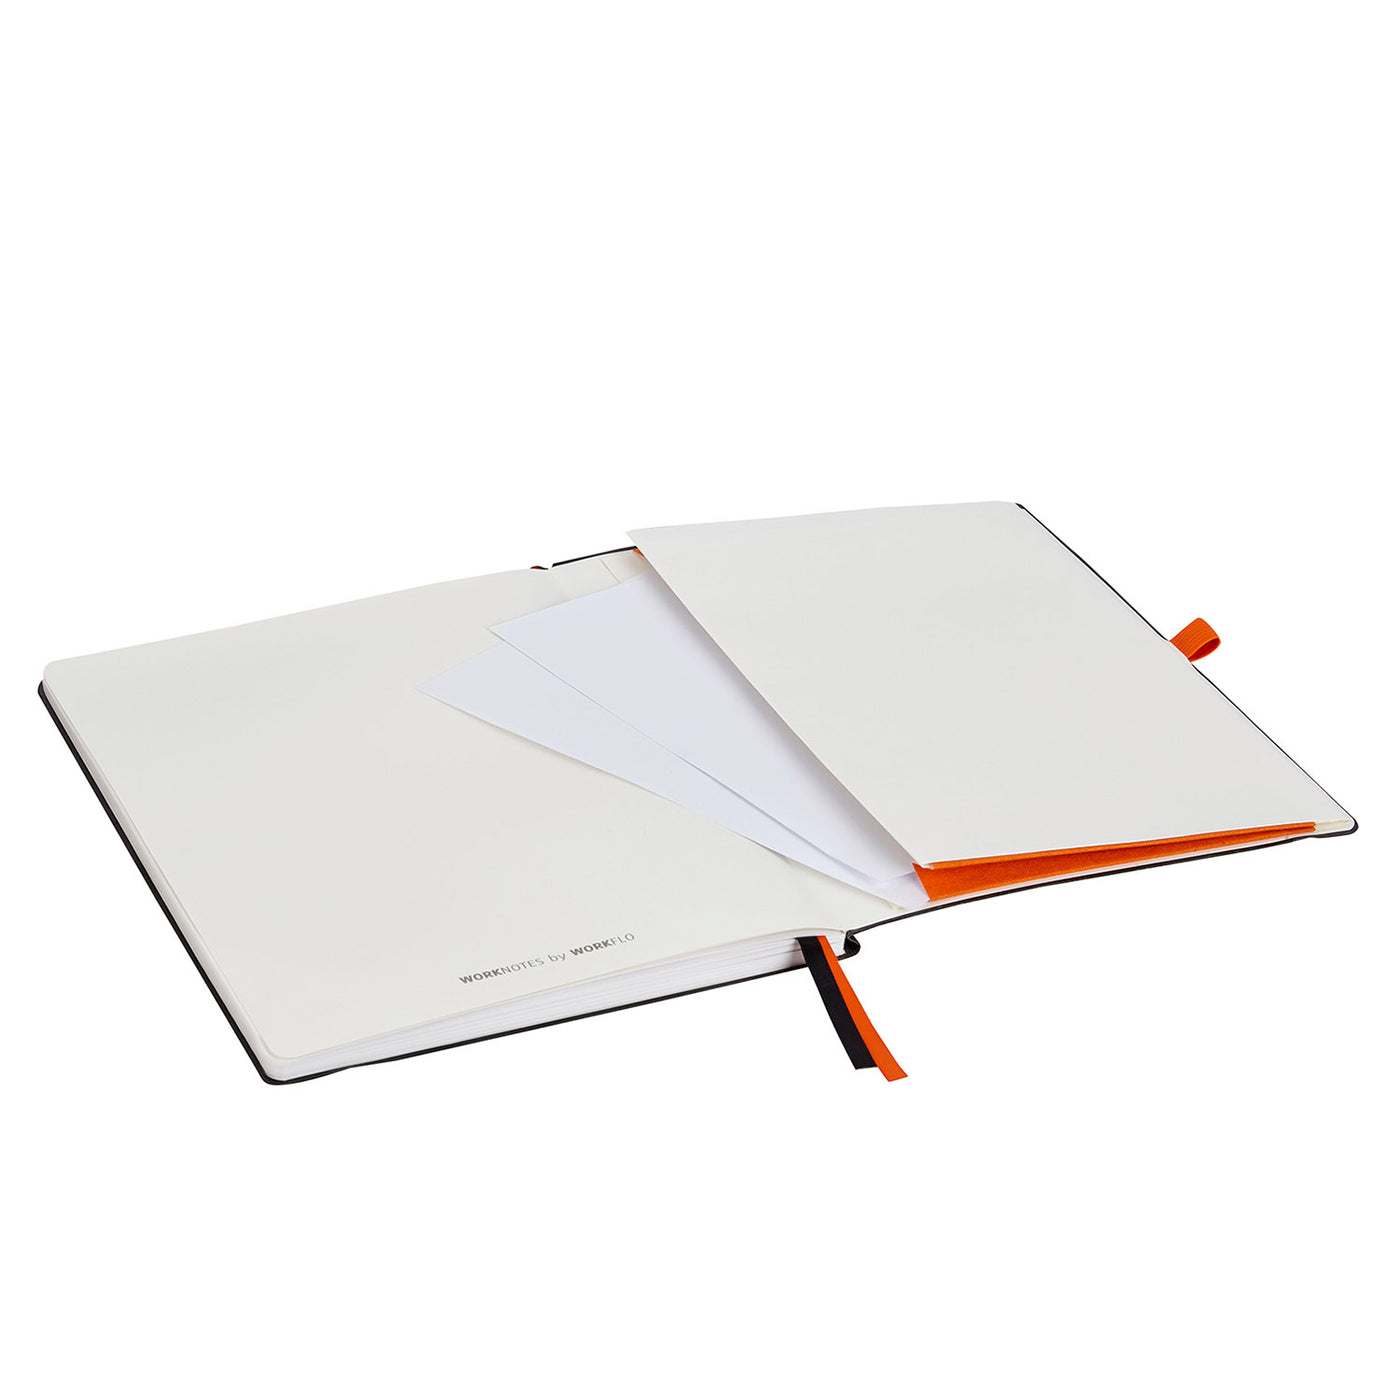 Worknotes B5 Notizbuch - kariert - iPad Größe -  Dokumenten Tasche